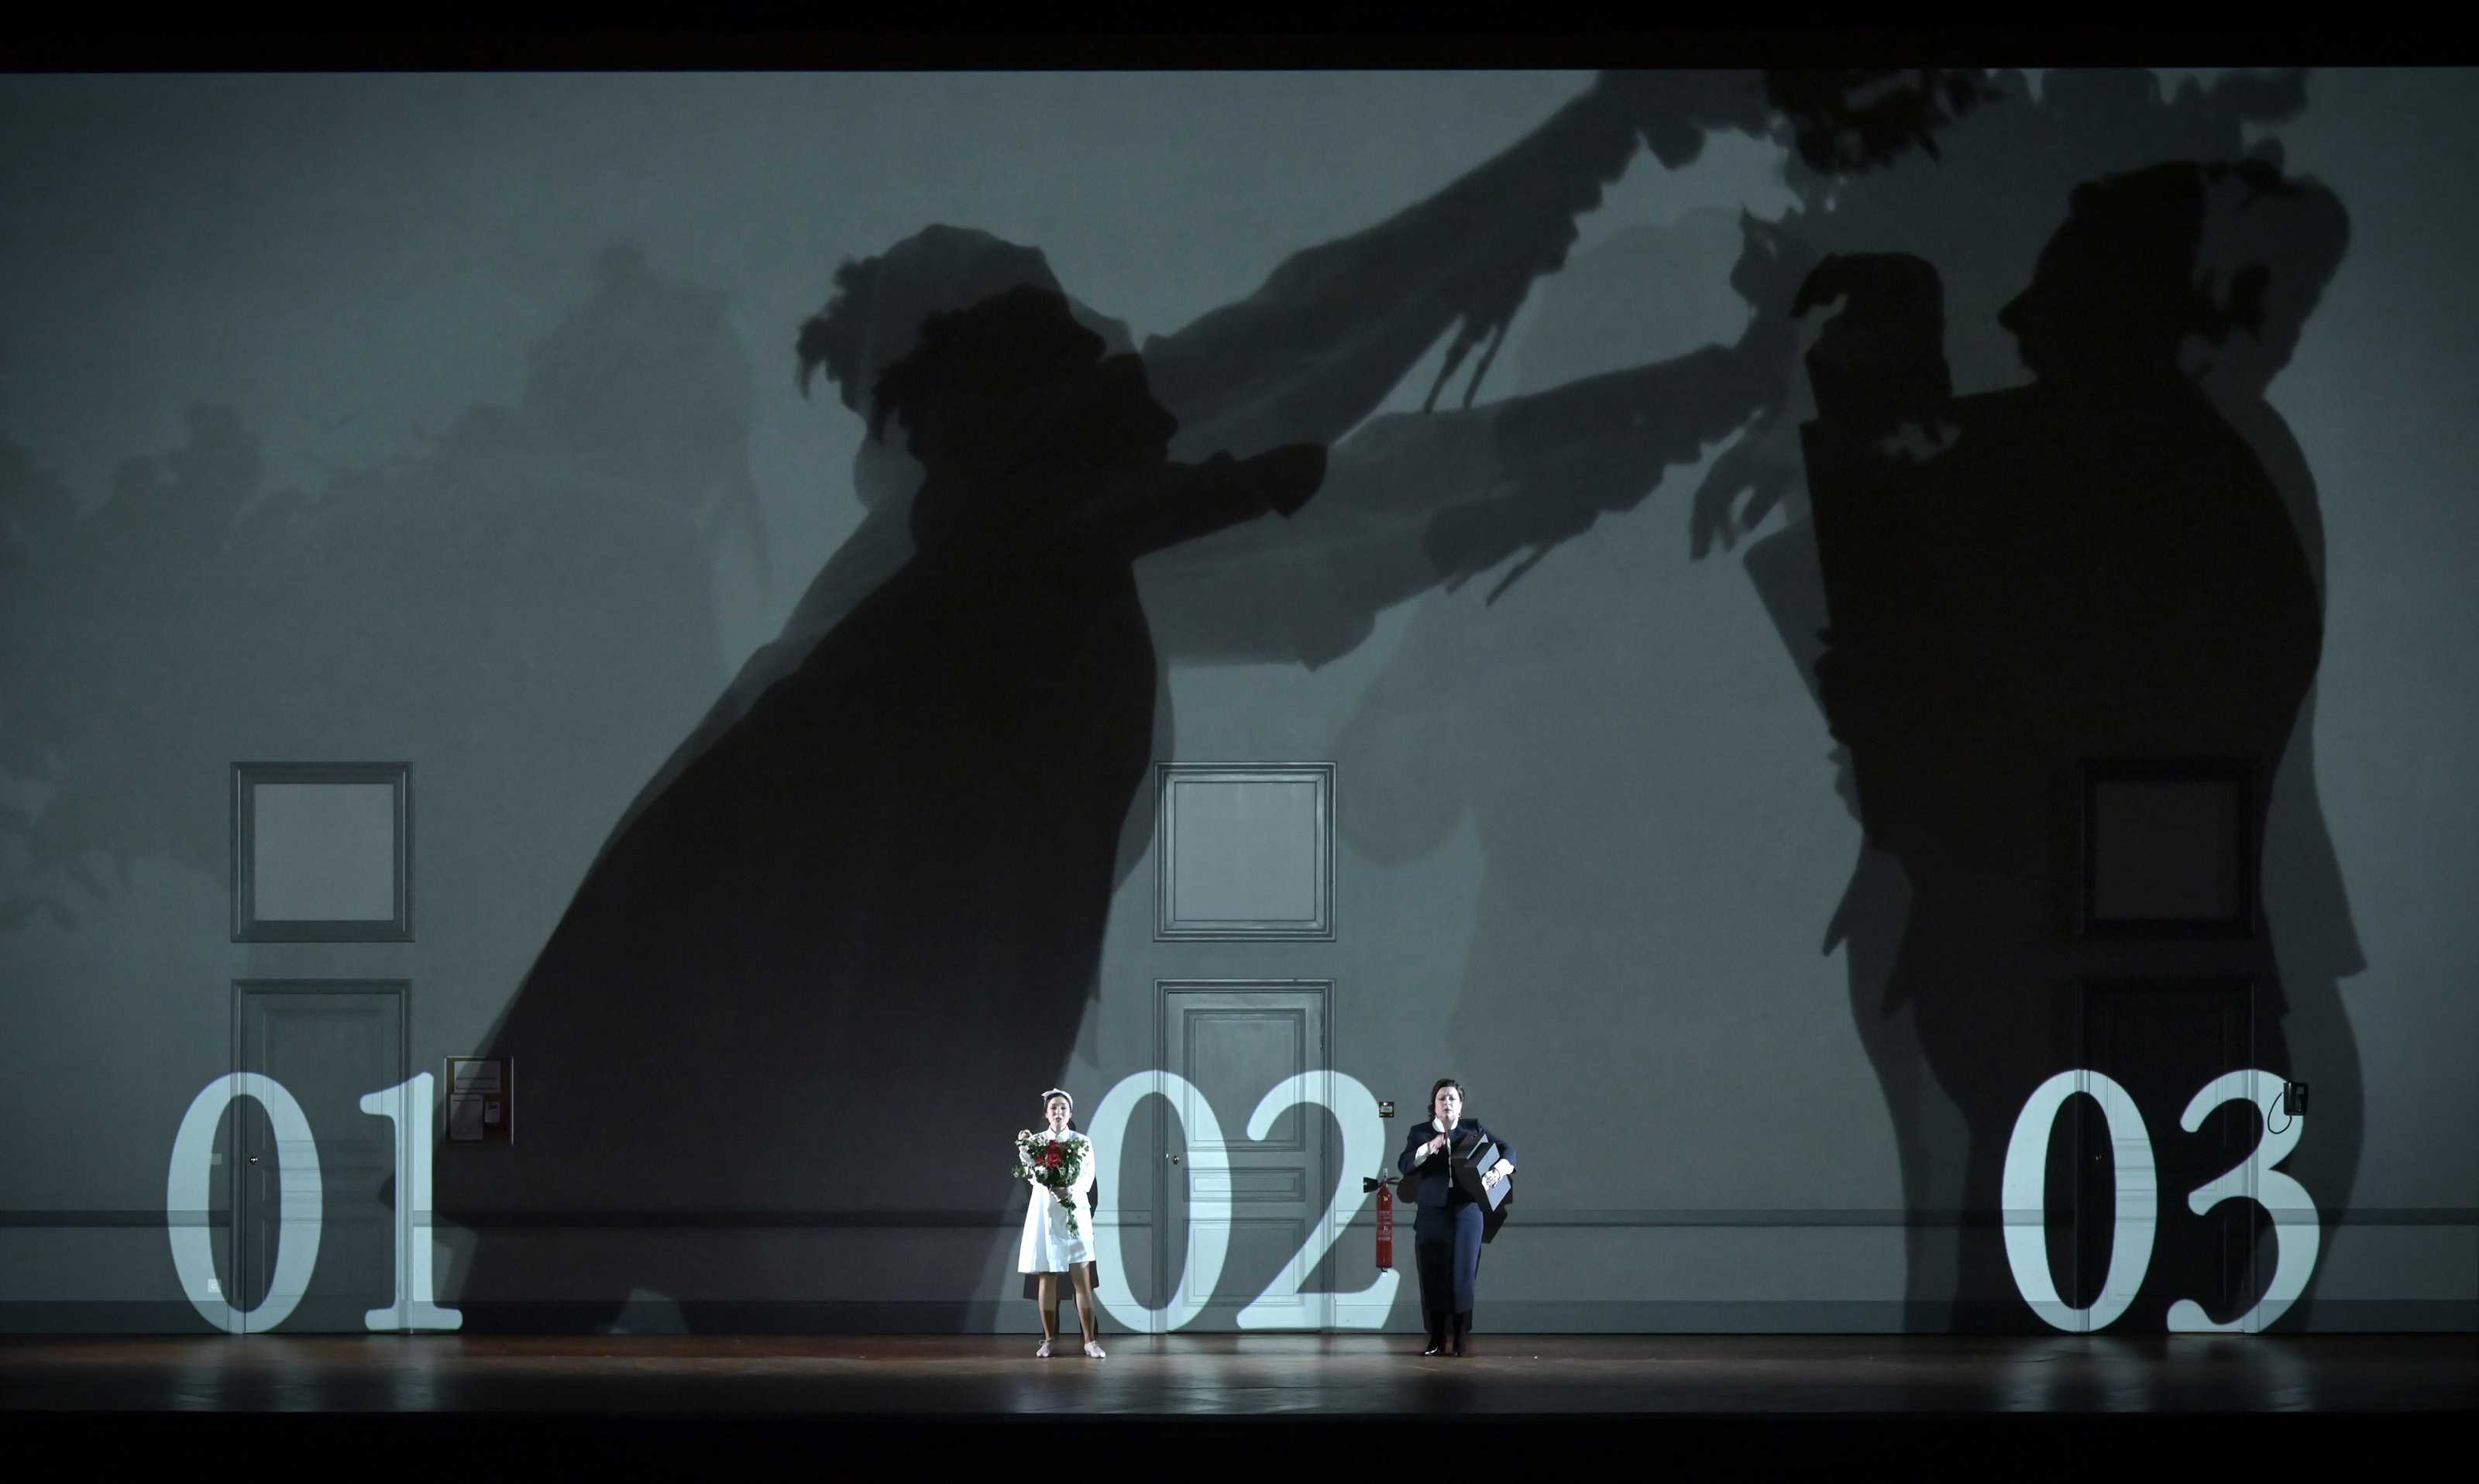 Le nozze di Figaro, Palais Garnier, Paris: 23 November-28 December 2022